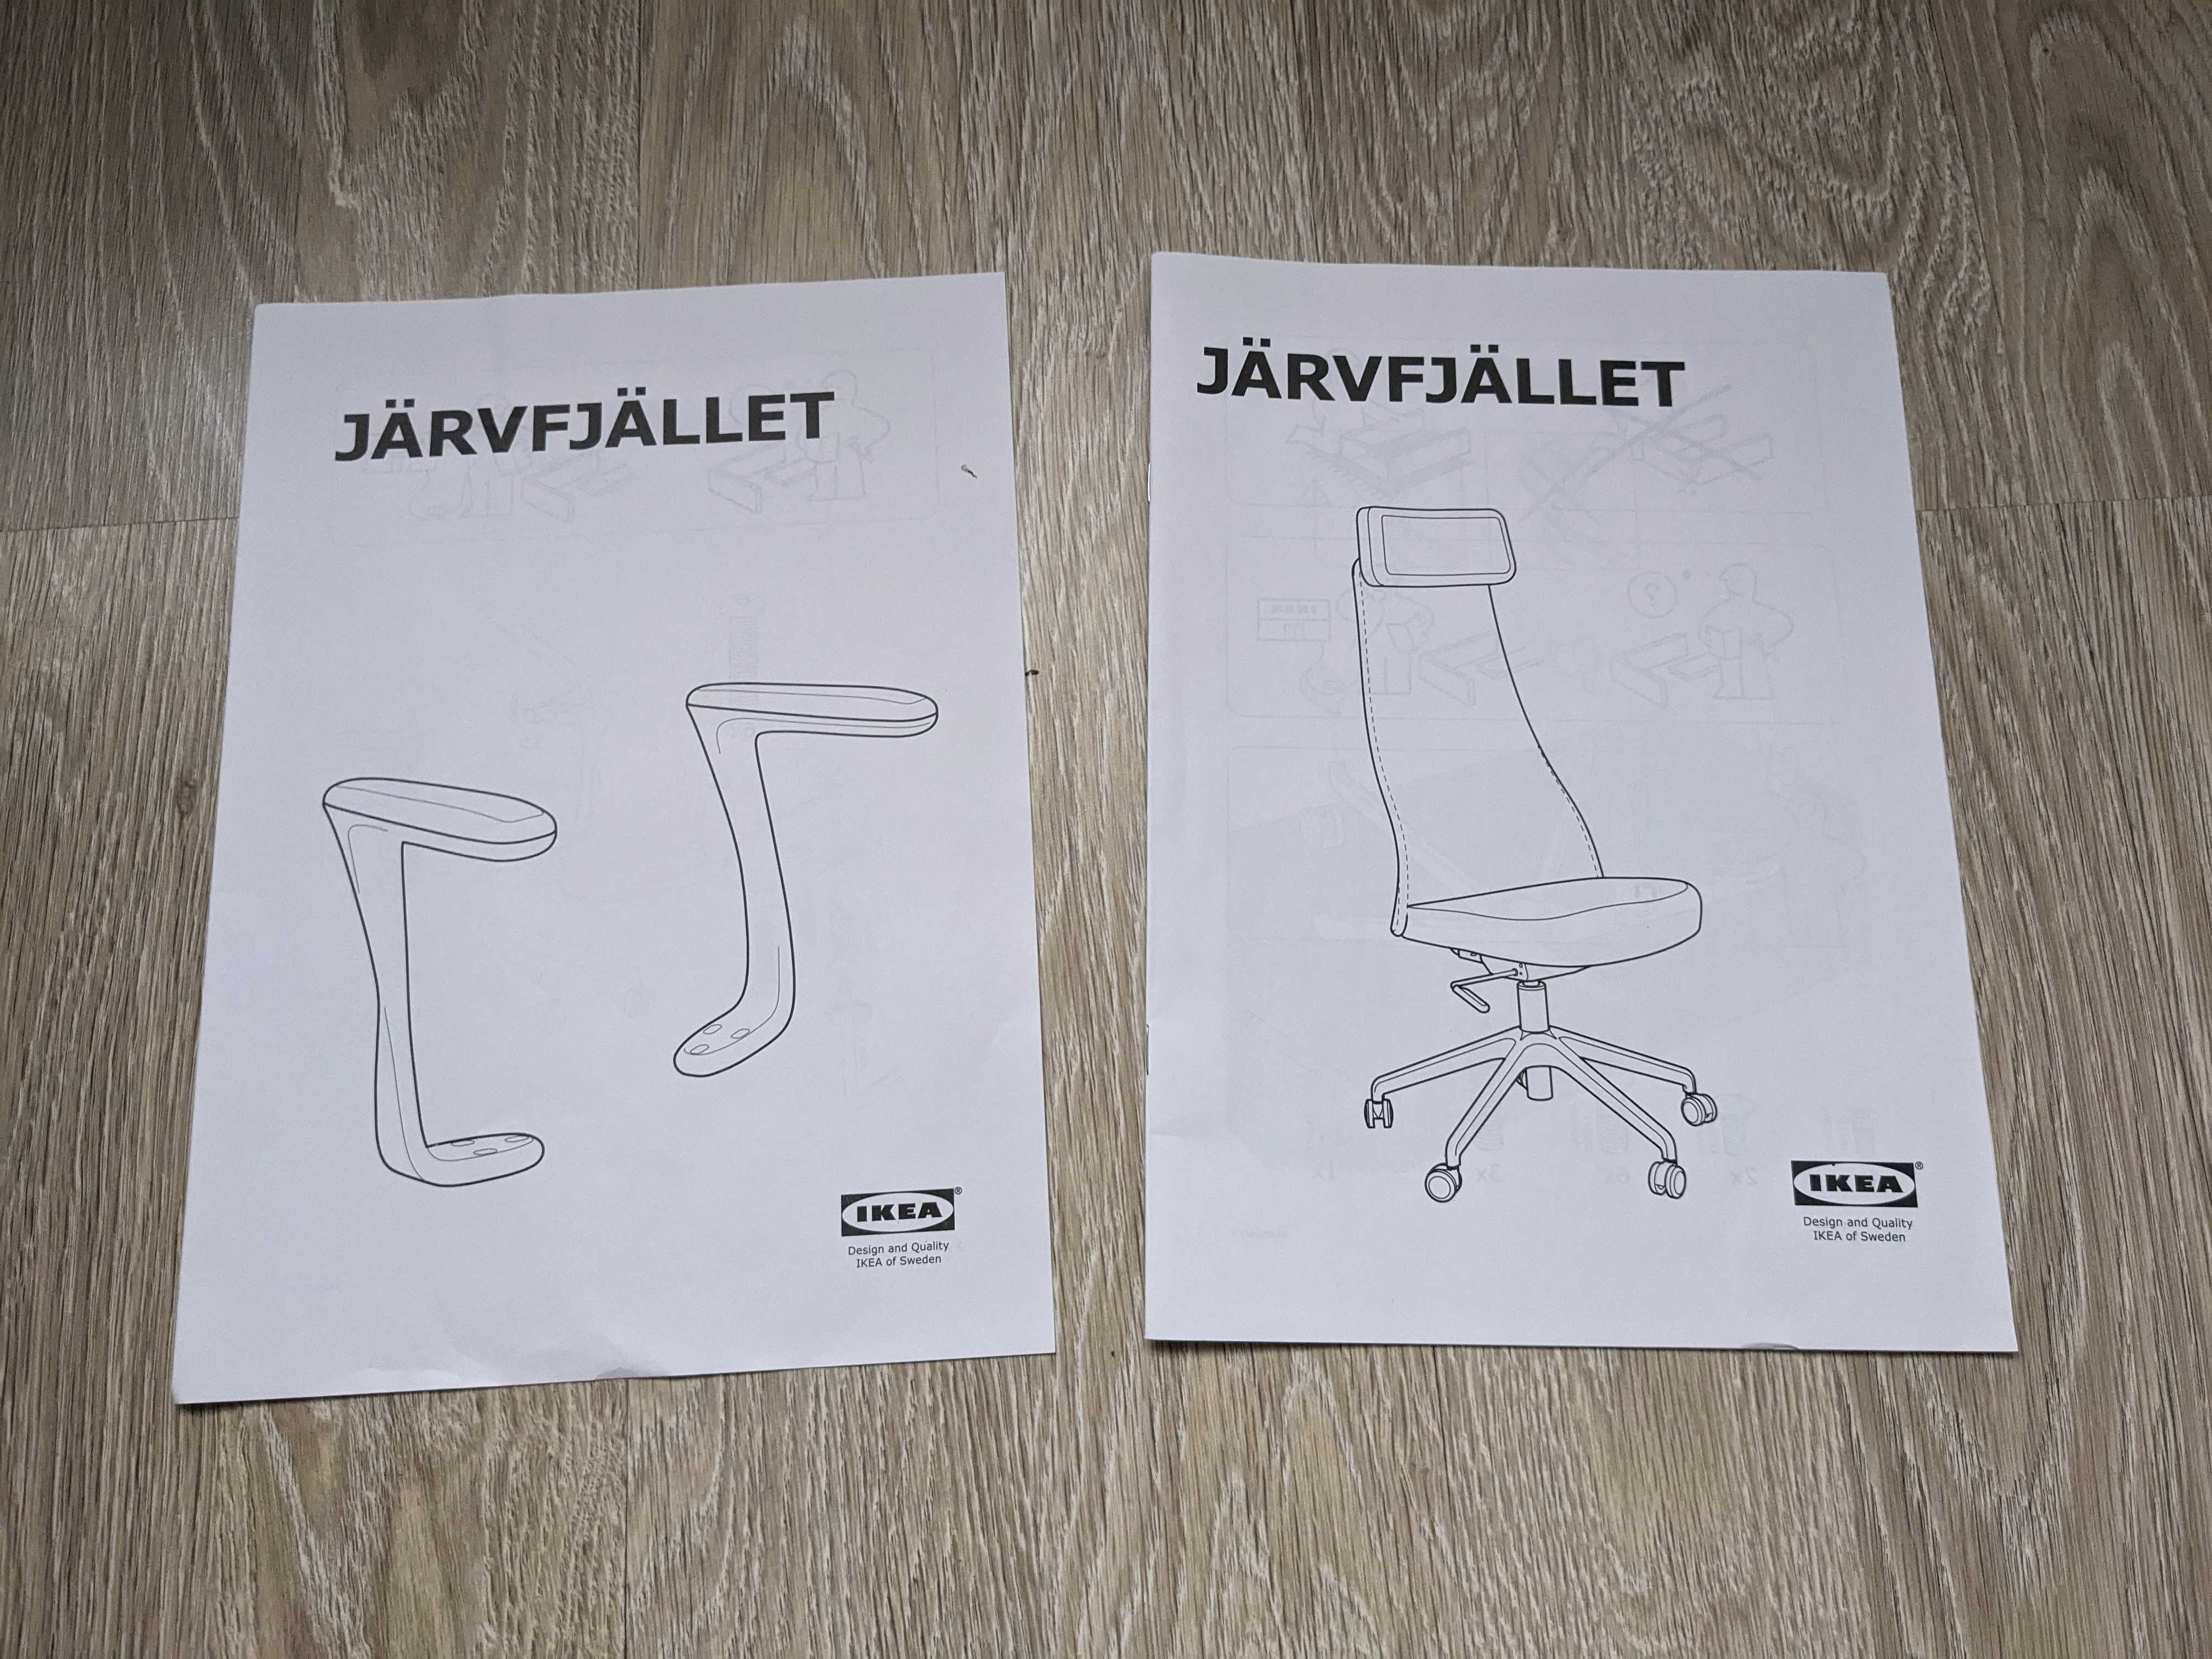 Scaun Ikea Jarvfjallet